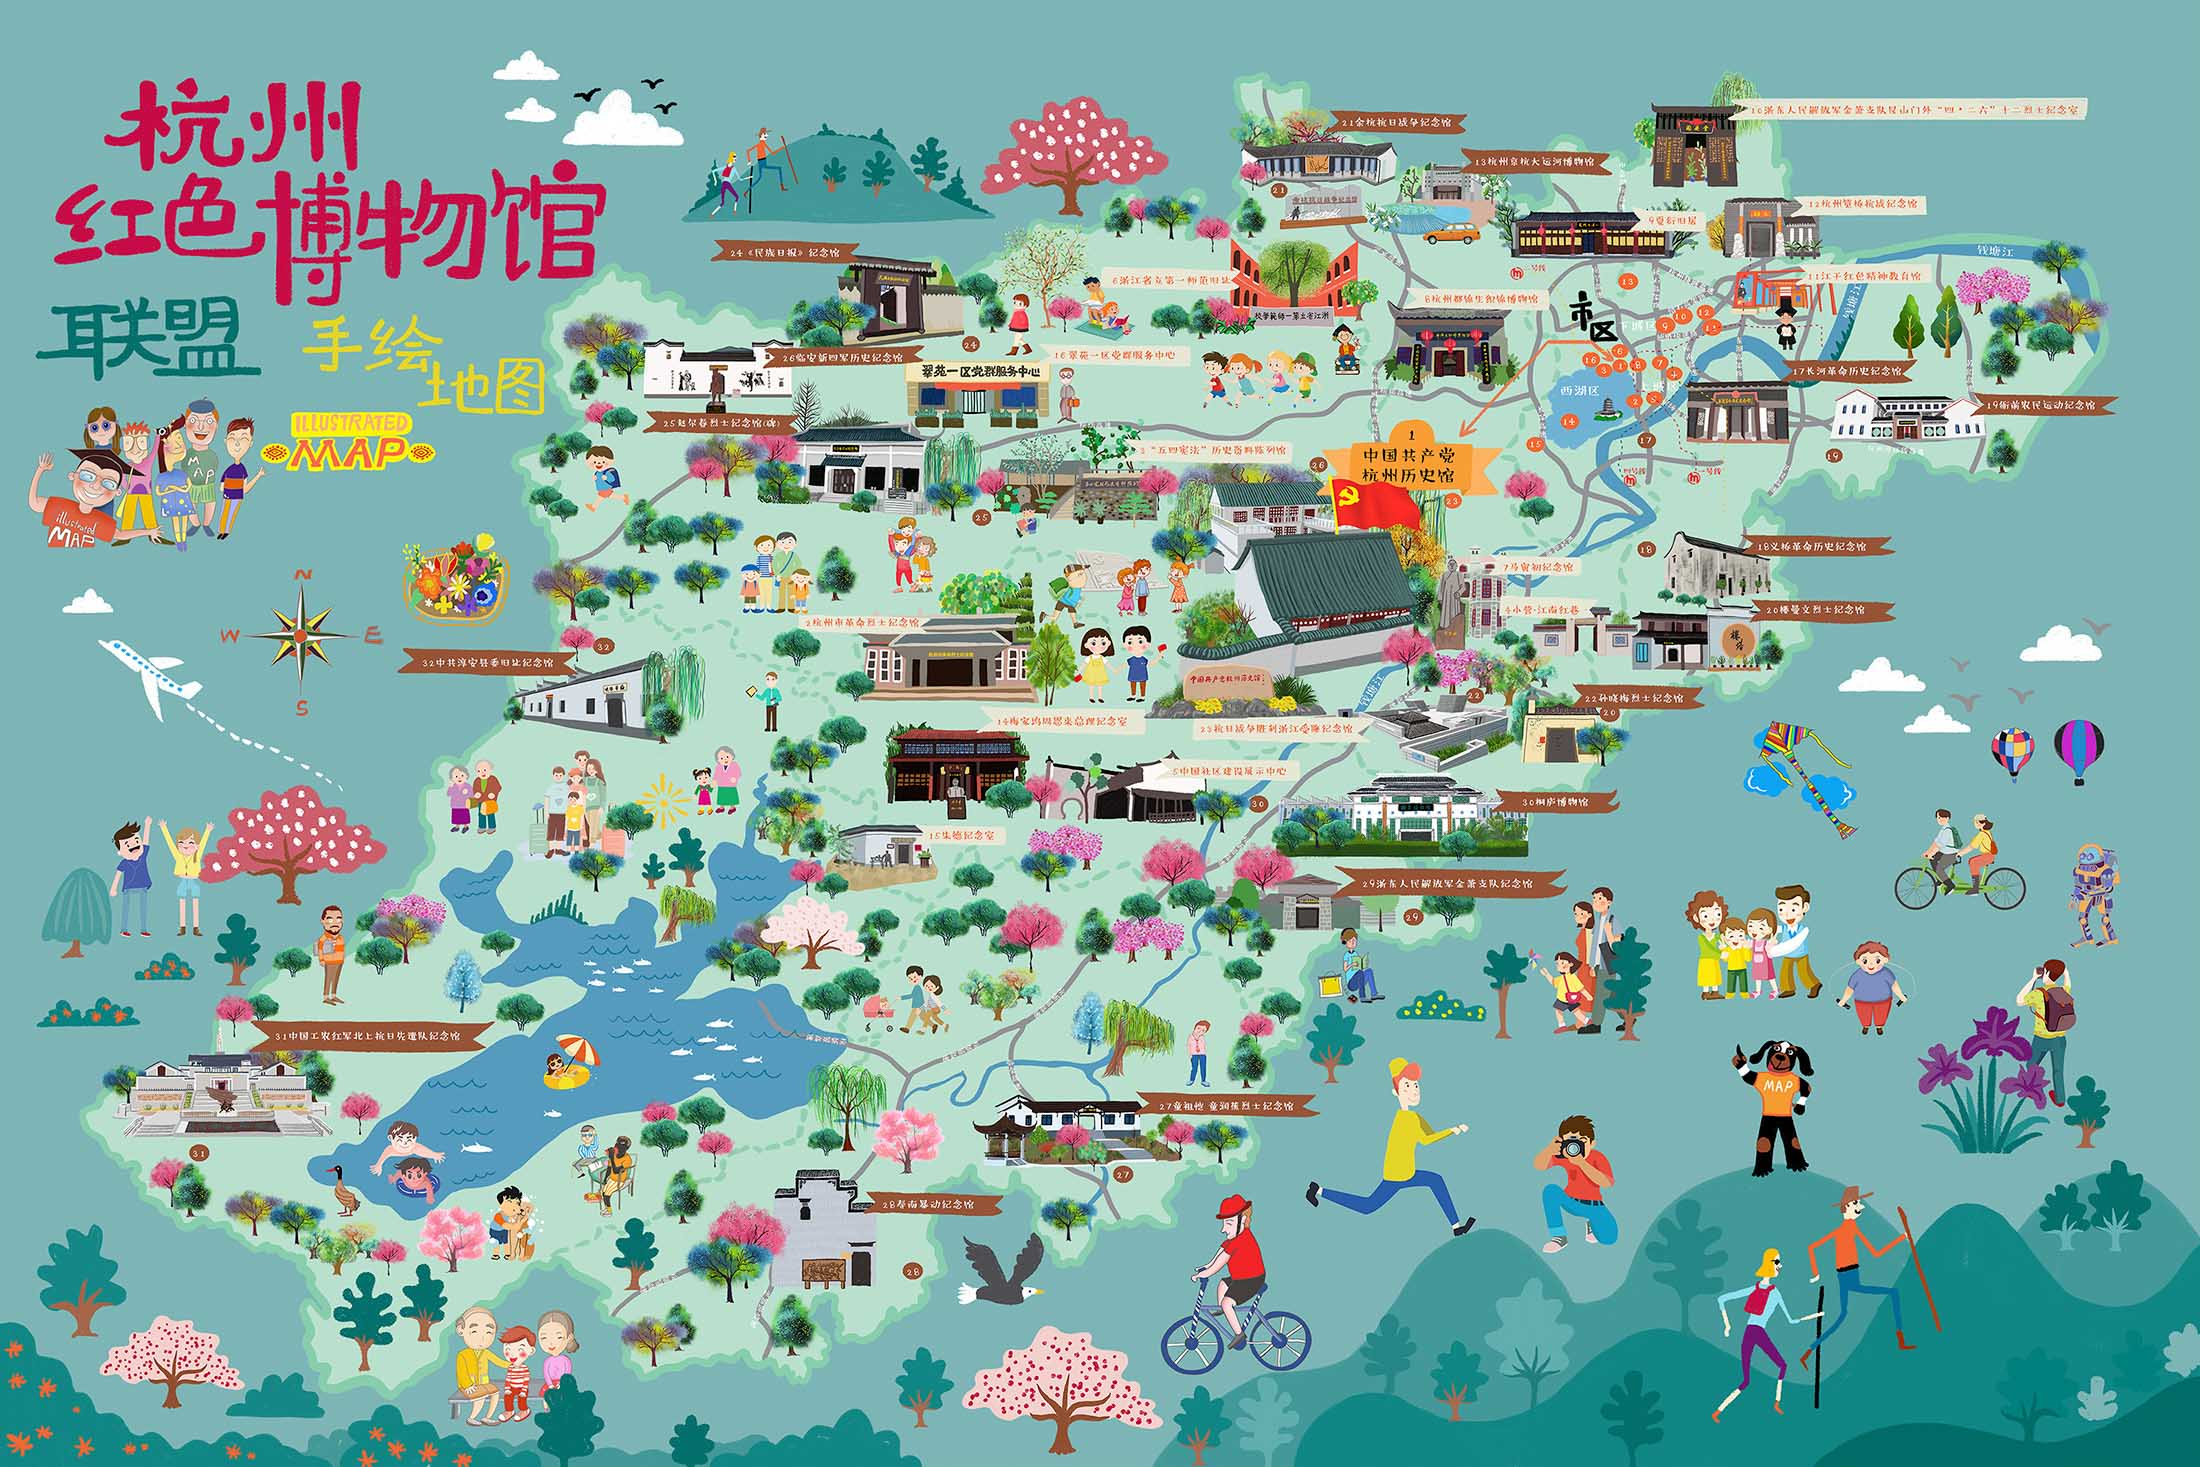 江城手绘地图与科技的完美结合 